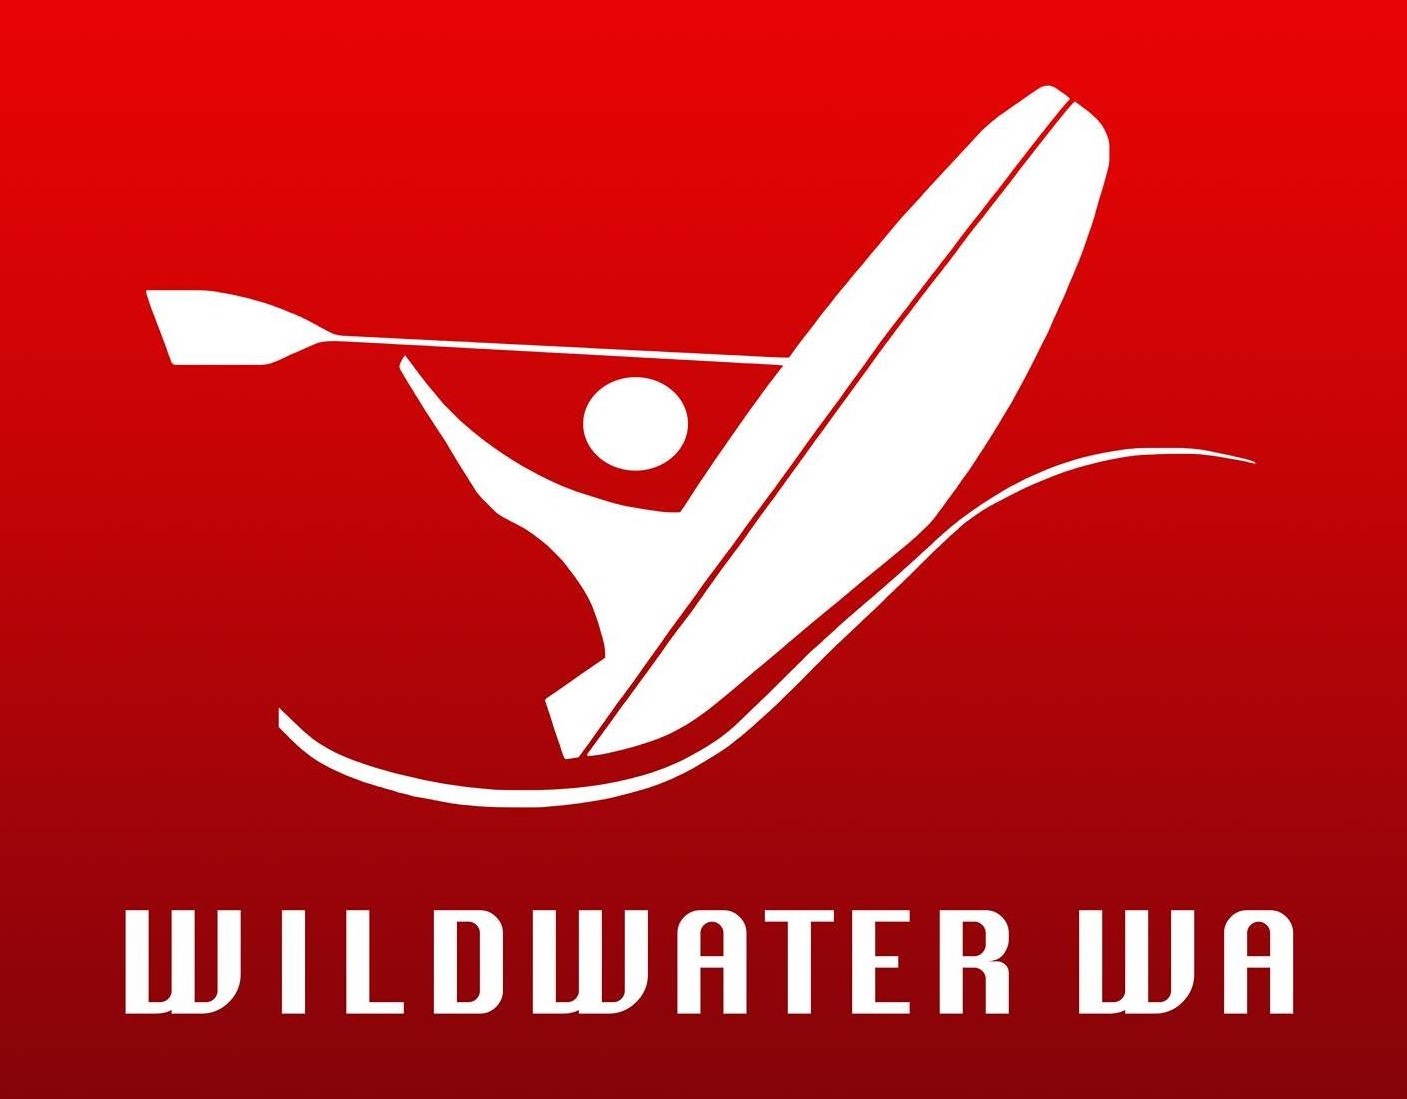 Wildwater Wa